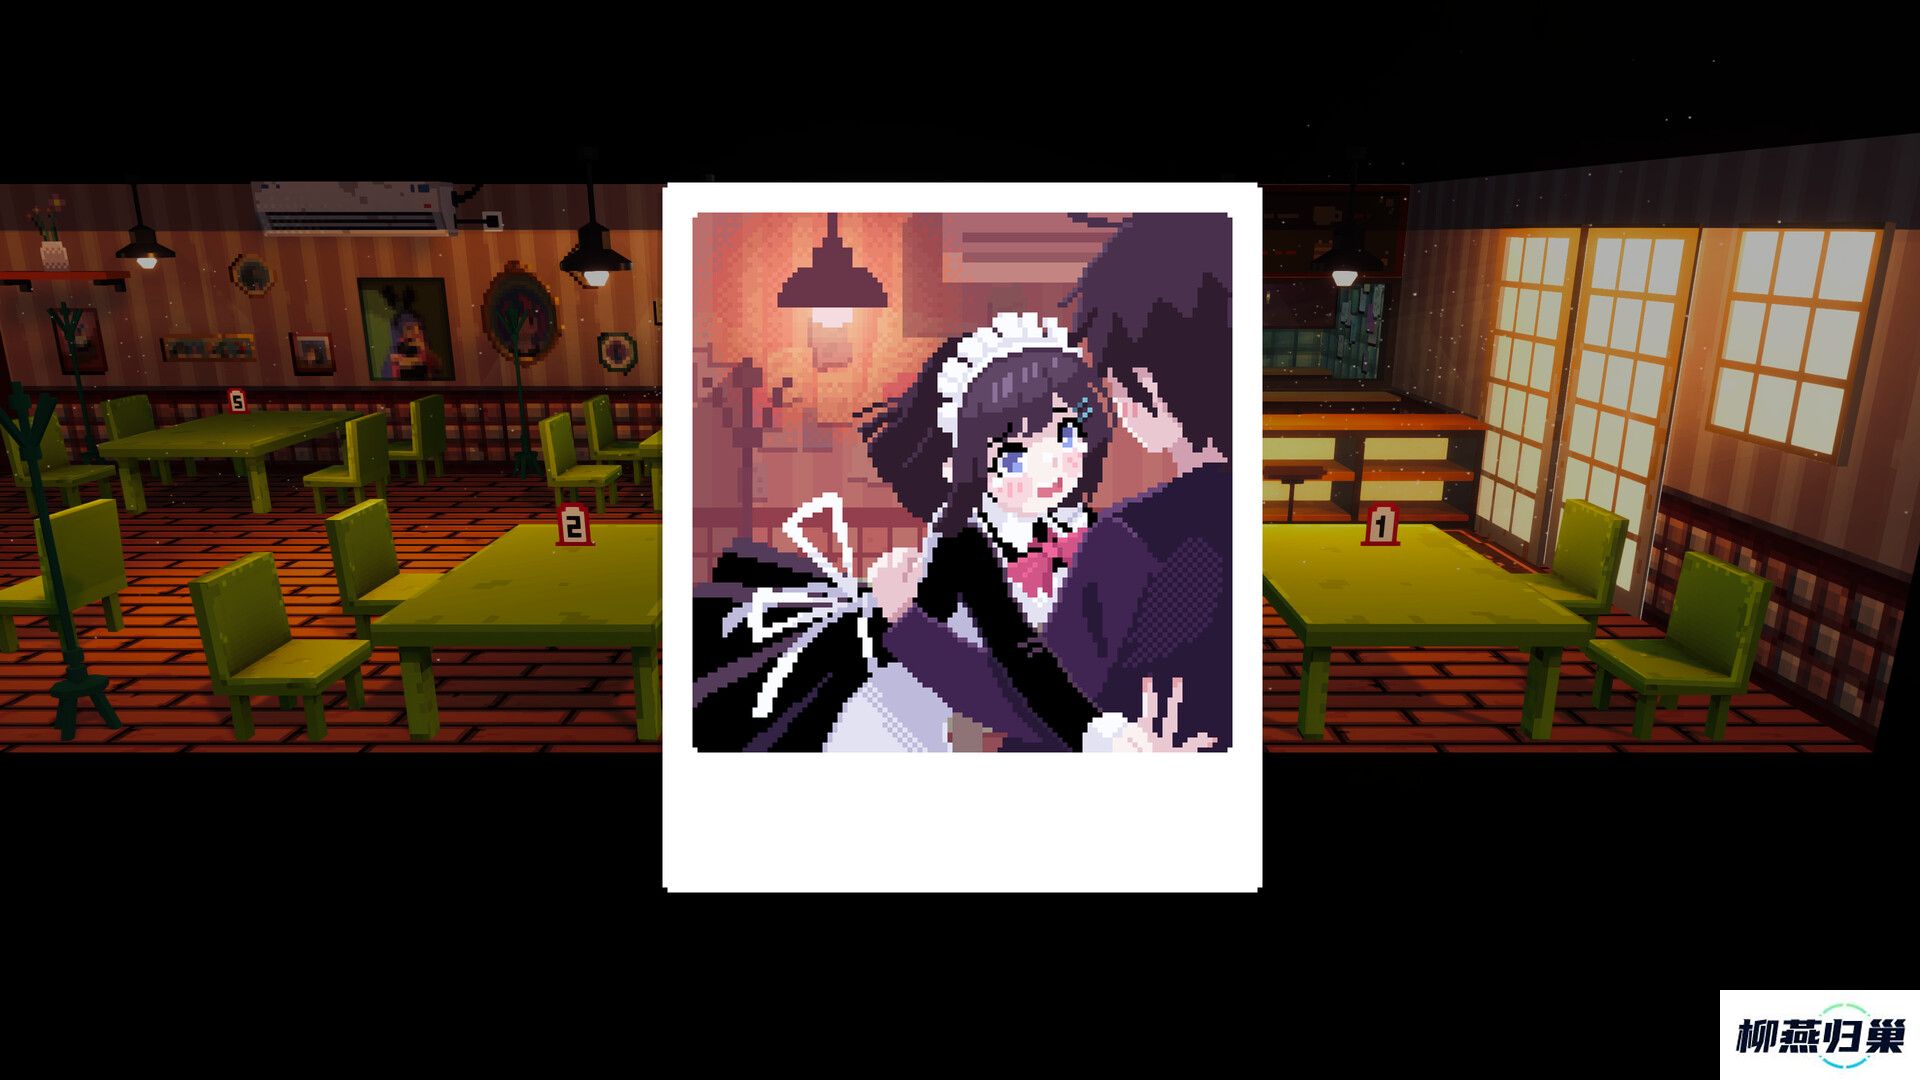 恋爱系经营模拟游戏芙哇芙哇女仆咖啡厅现已在Steam平台推出试玩Demo